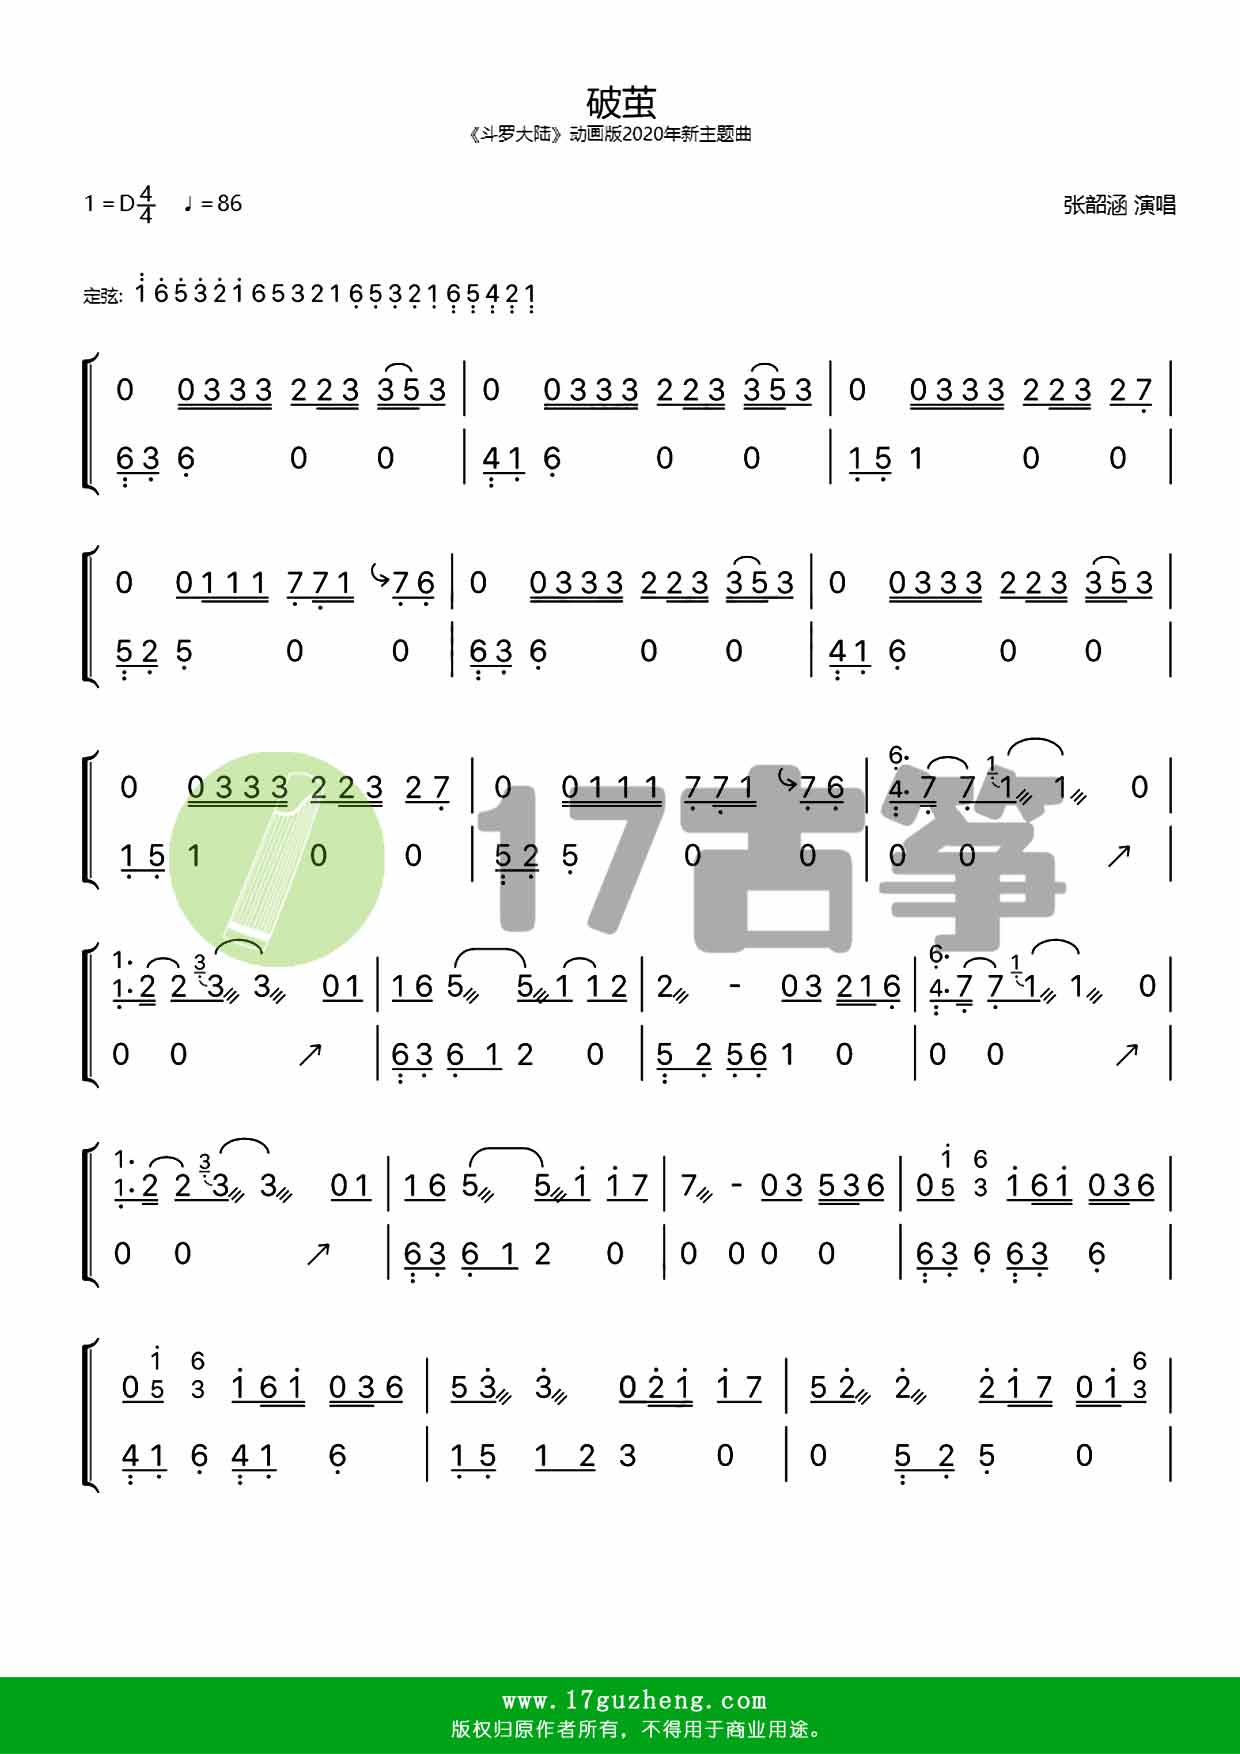 破茧双手版古筝谱动画斗罗大陆2020年新主题曲